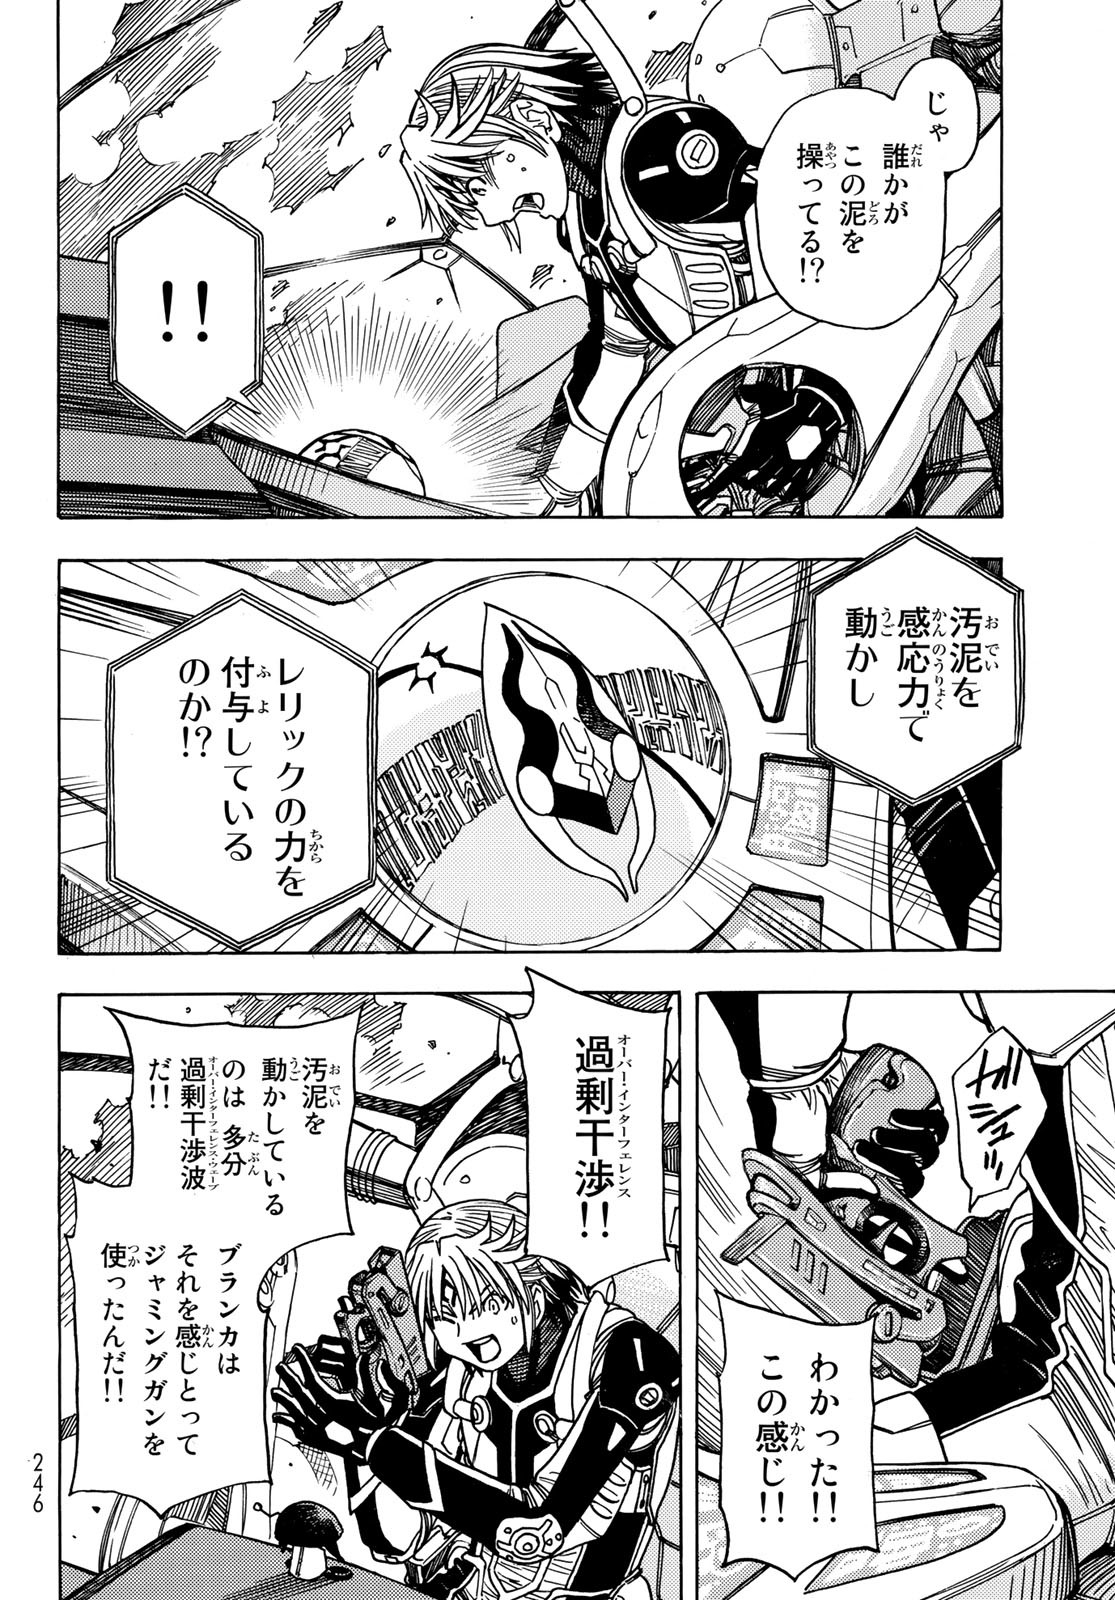 Mugou no Schnell Gear: Chikyuugai Kisouka AI - Chapter 46 - Page 12